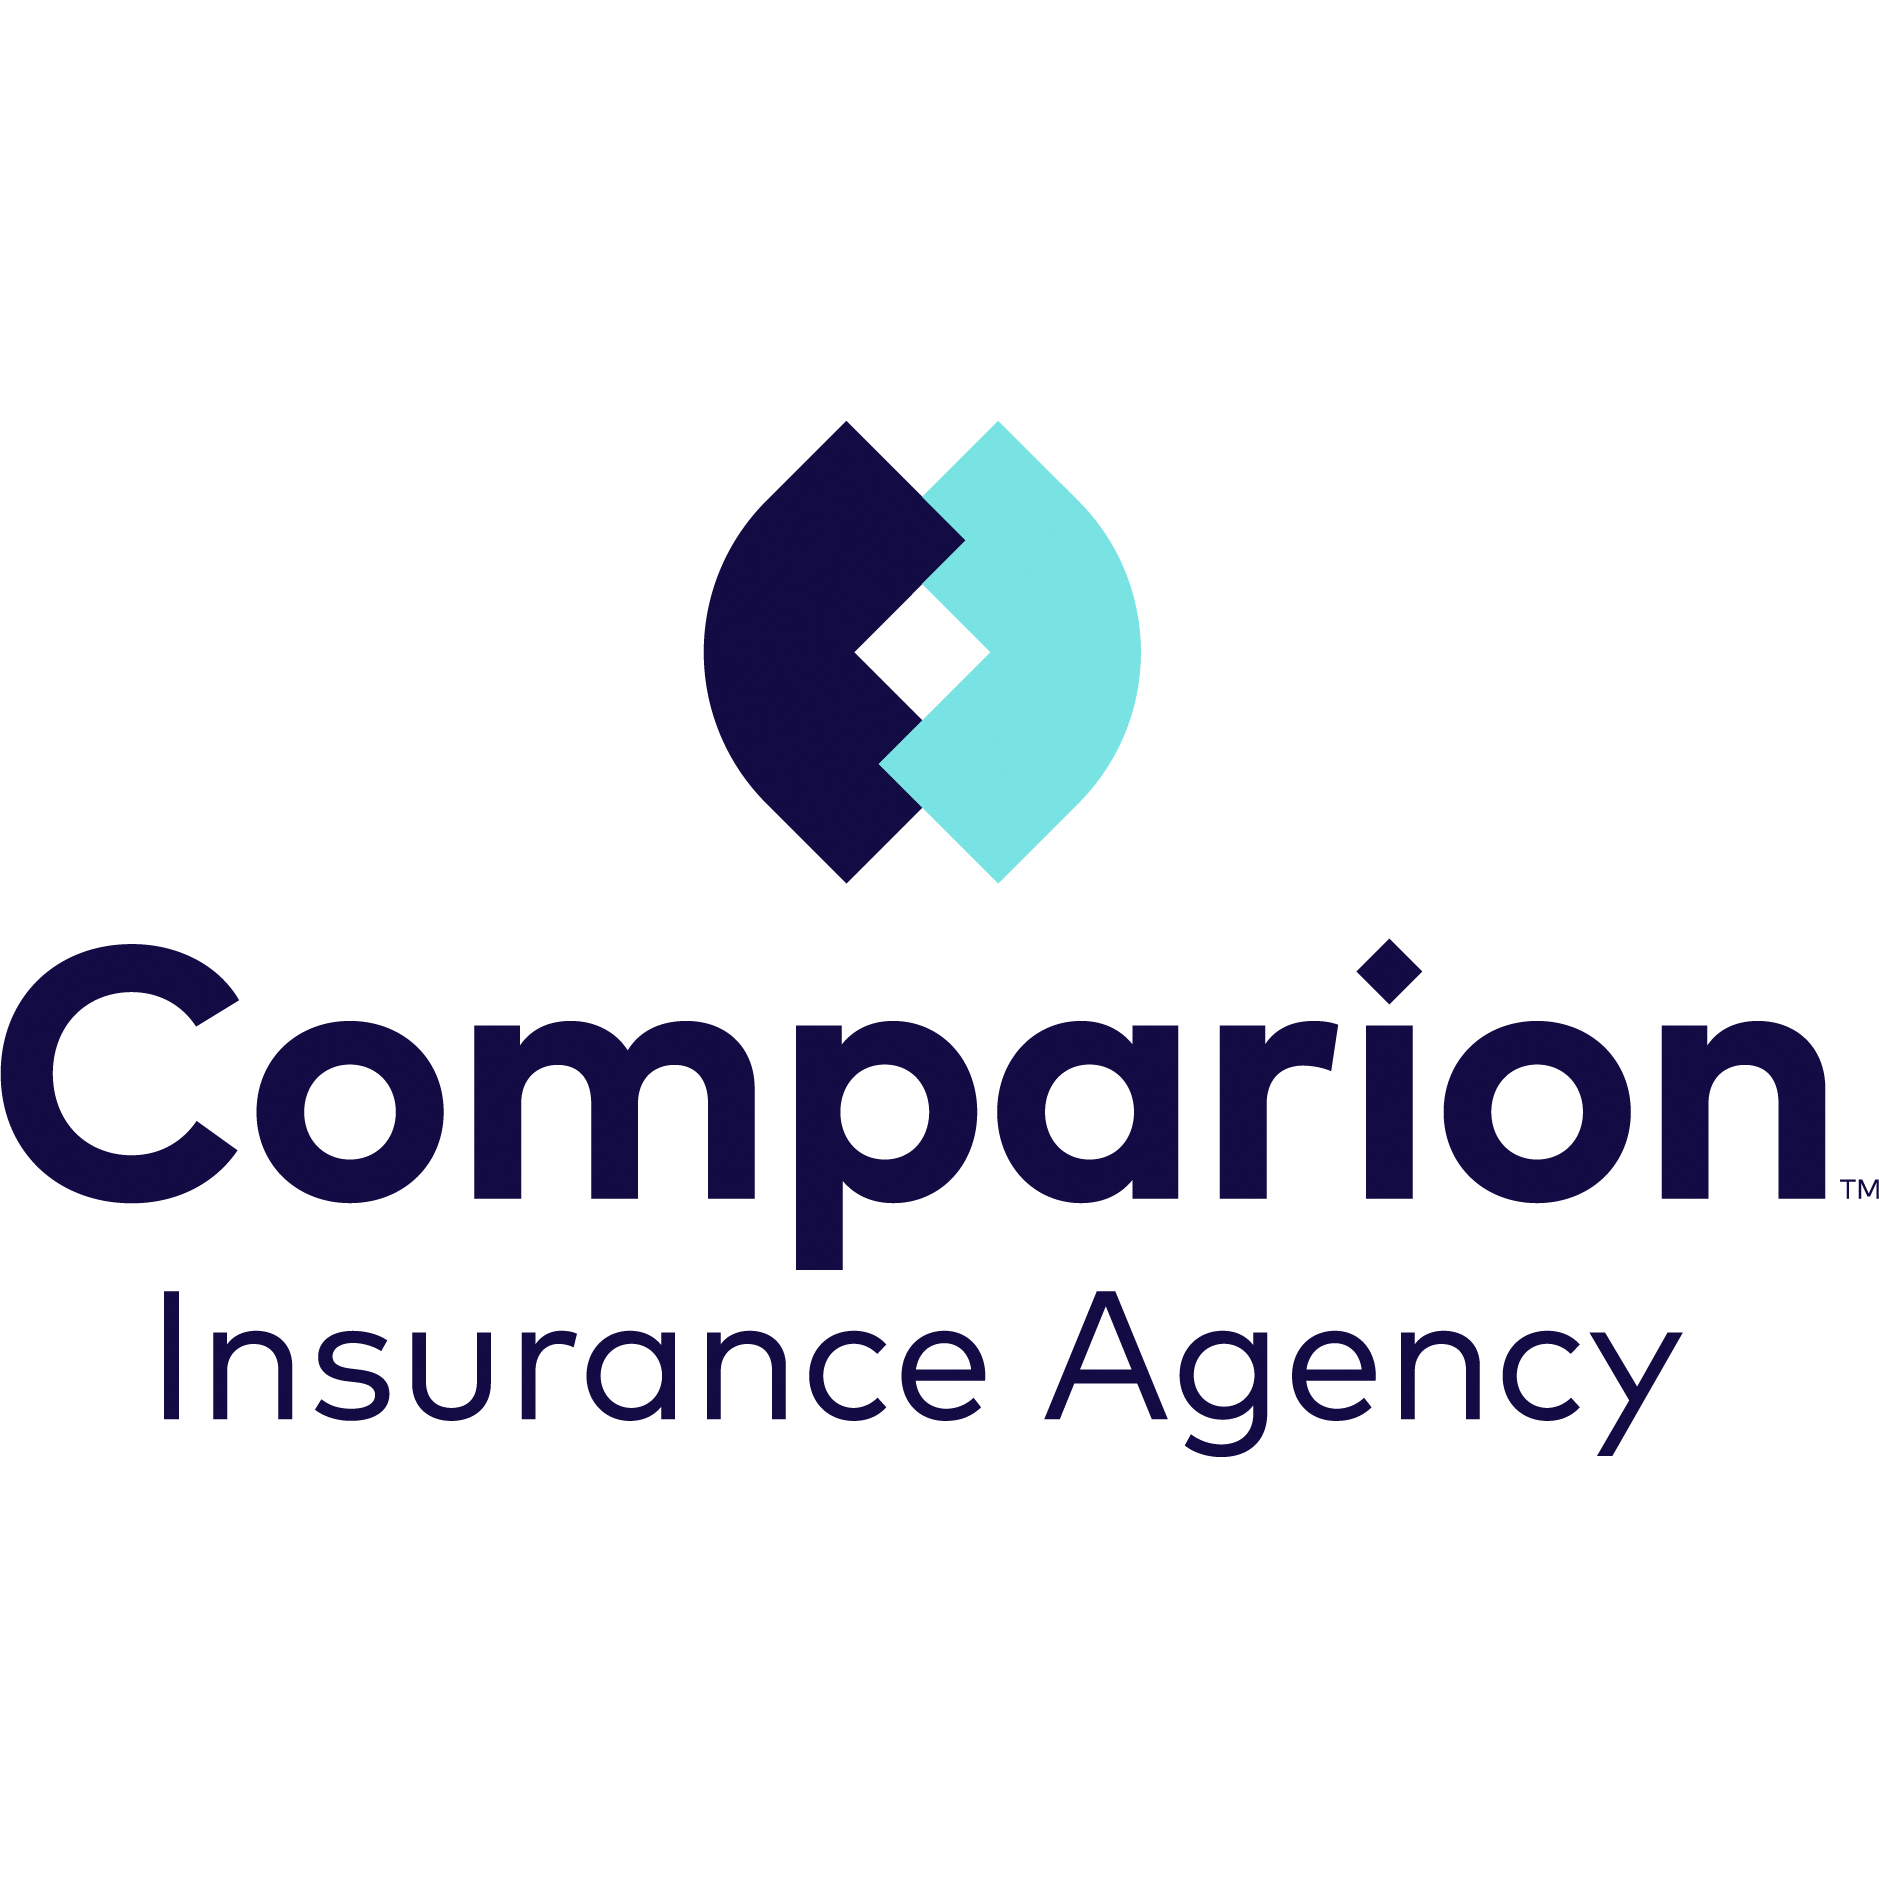 Christopher Estevez, Insurance Agent | Comparion Insurance Agency